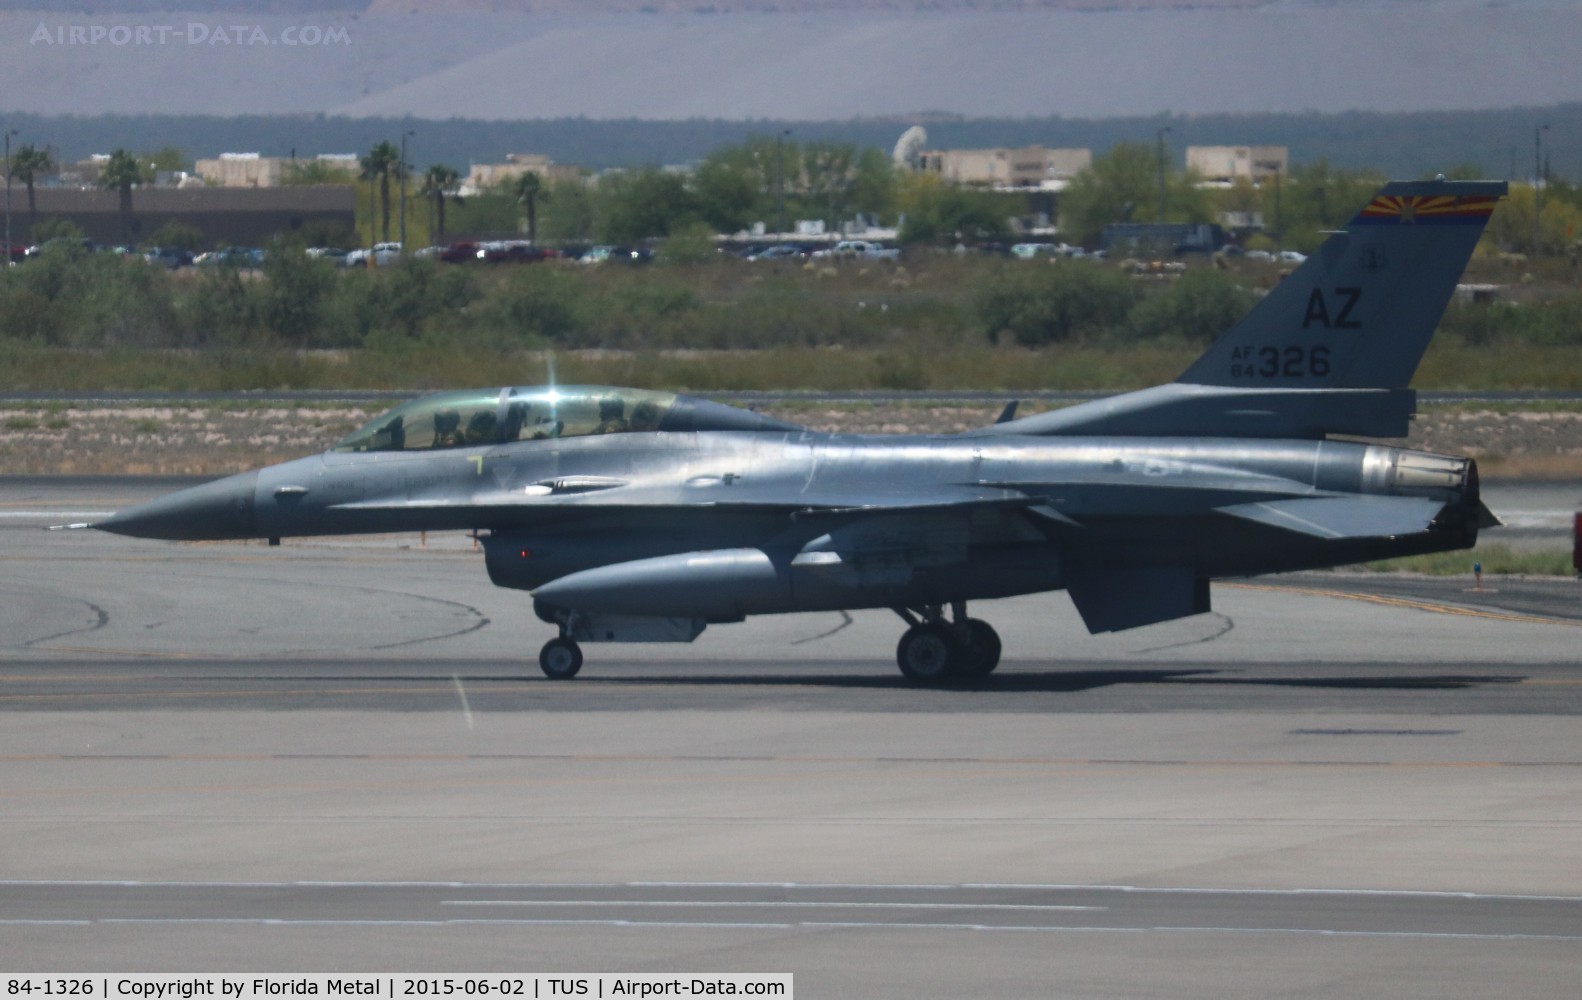 84-1326, 1984 General Dynamics F-16D Fighting Falcon C/N 5D-20, F-16D